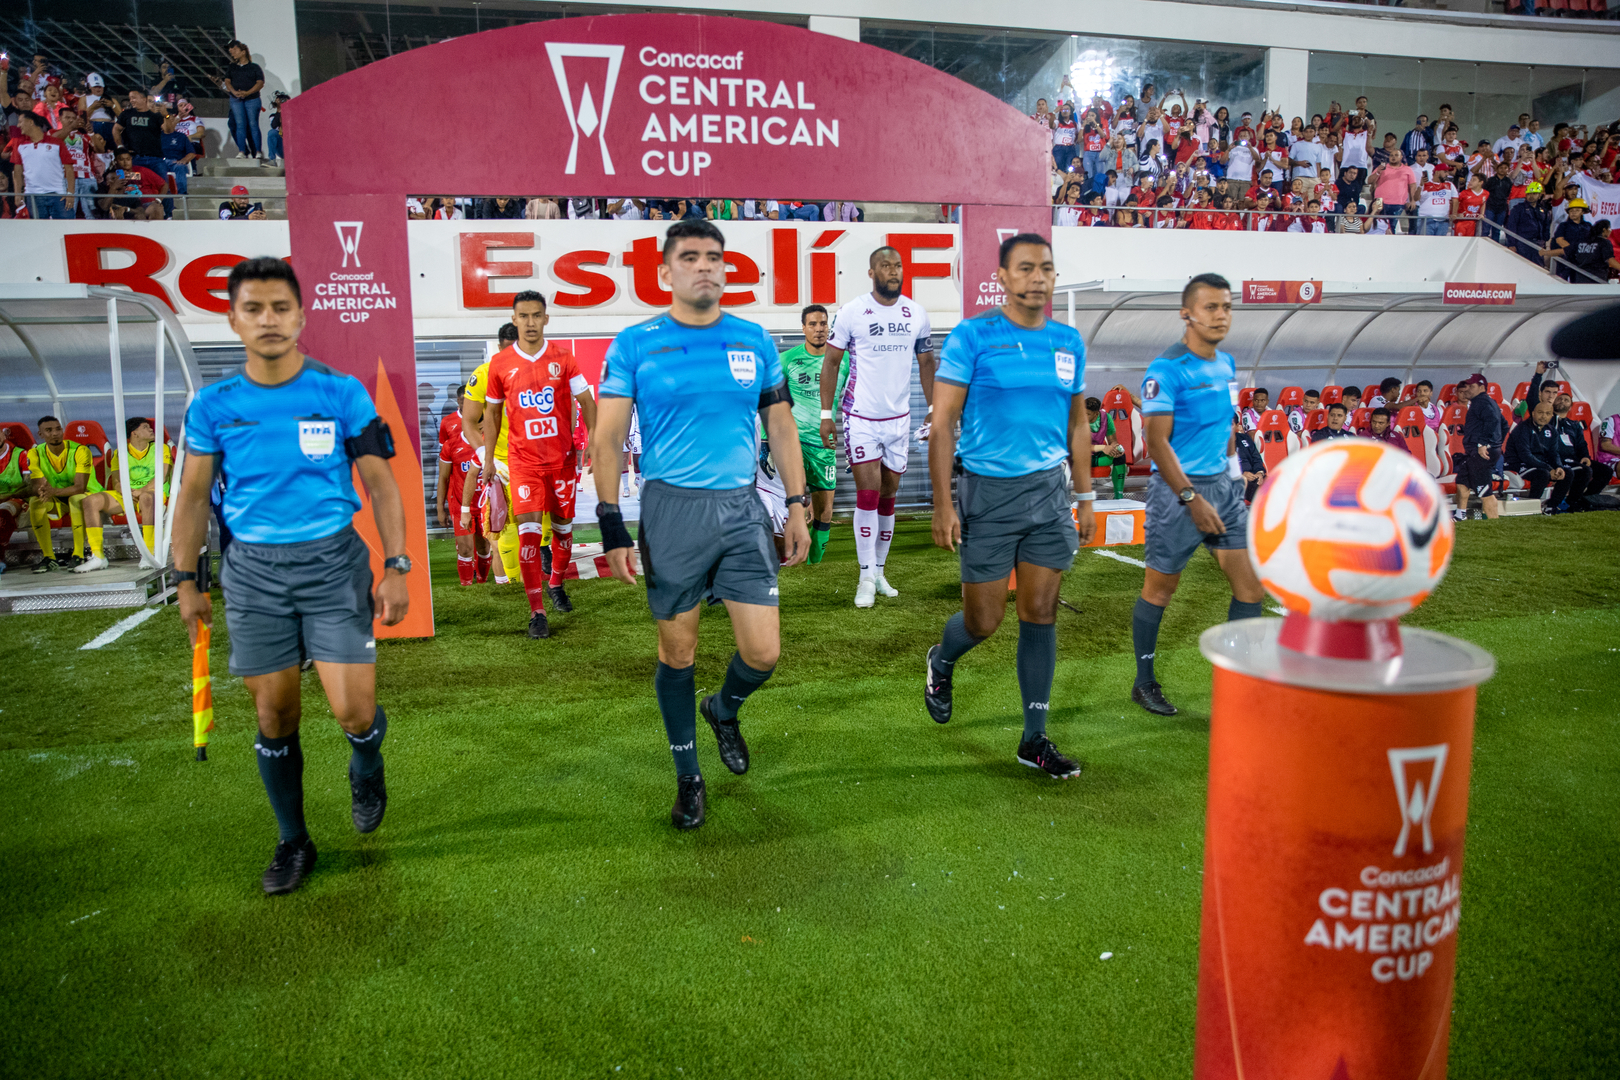 Final de la Copa centroaméricana Concacaf partido de vuelta en el